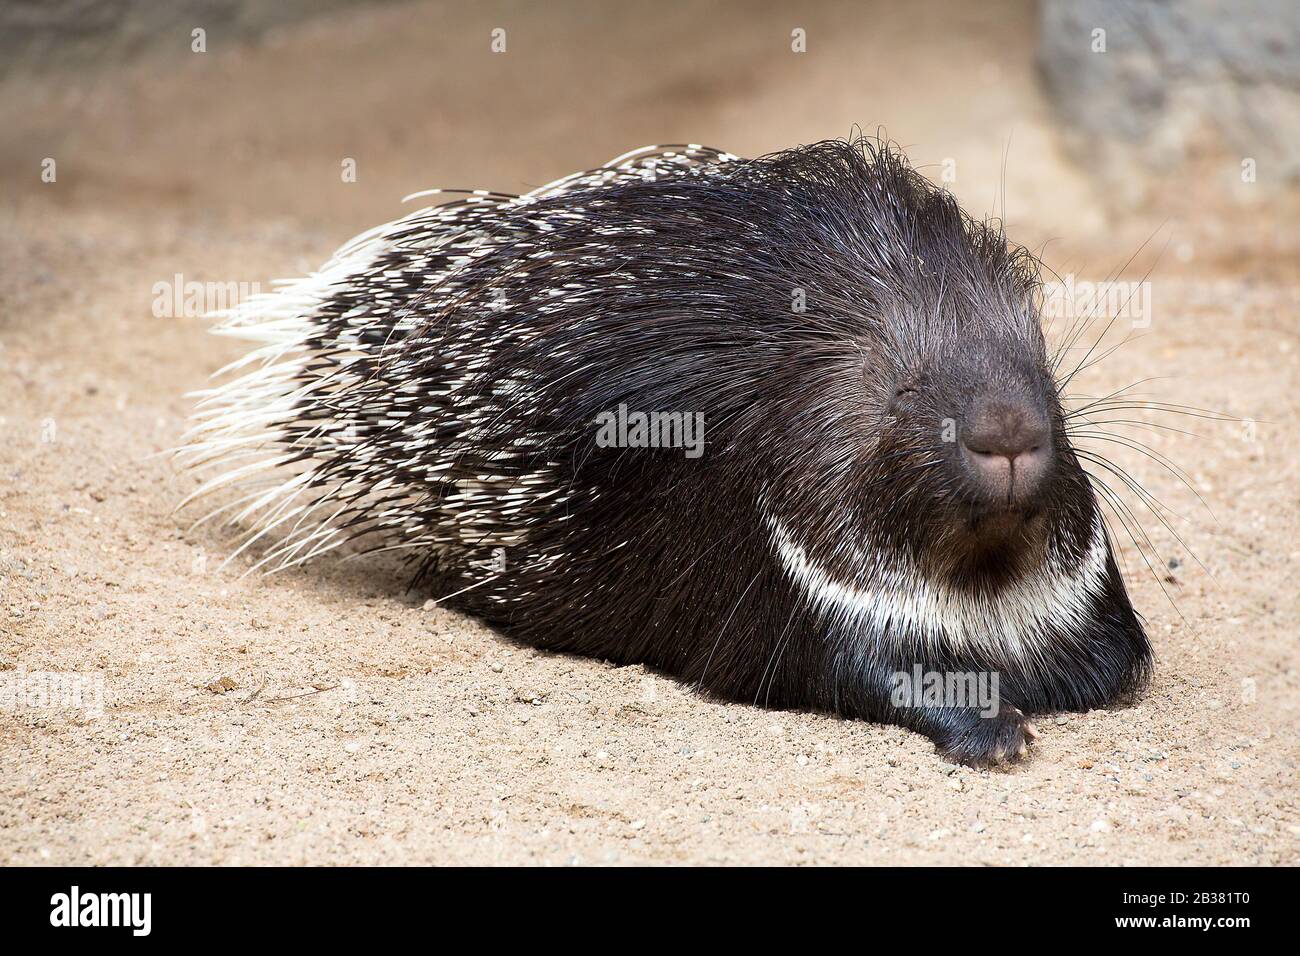 Stachelschwein, hystrix indica / indian crested porcupine, hystrix indica Stock Photo